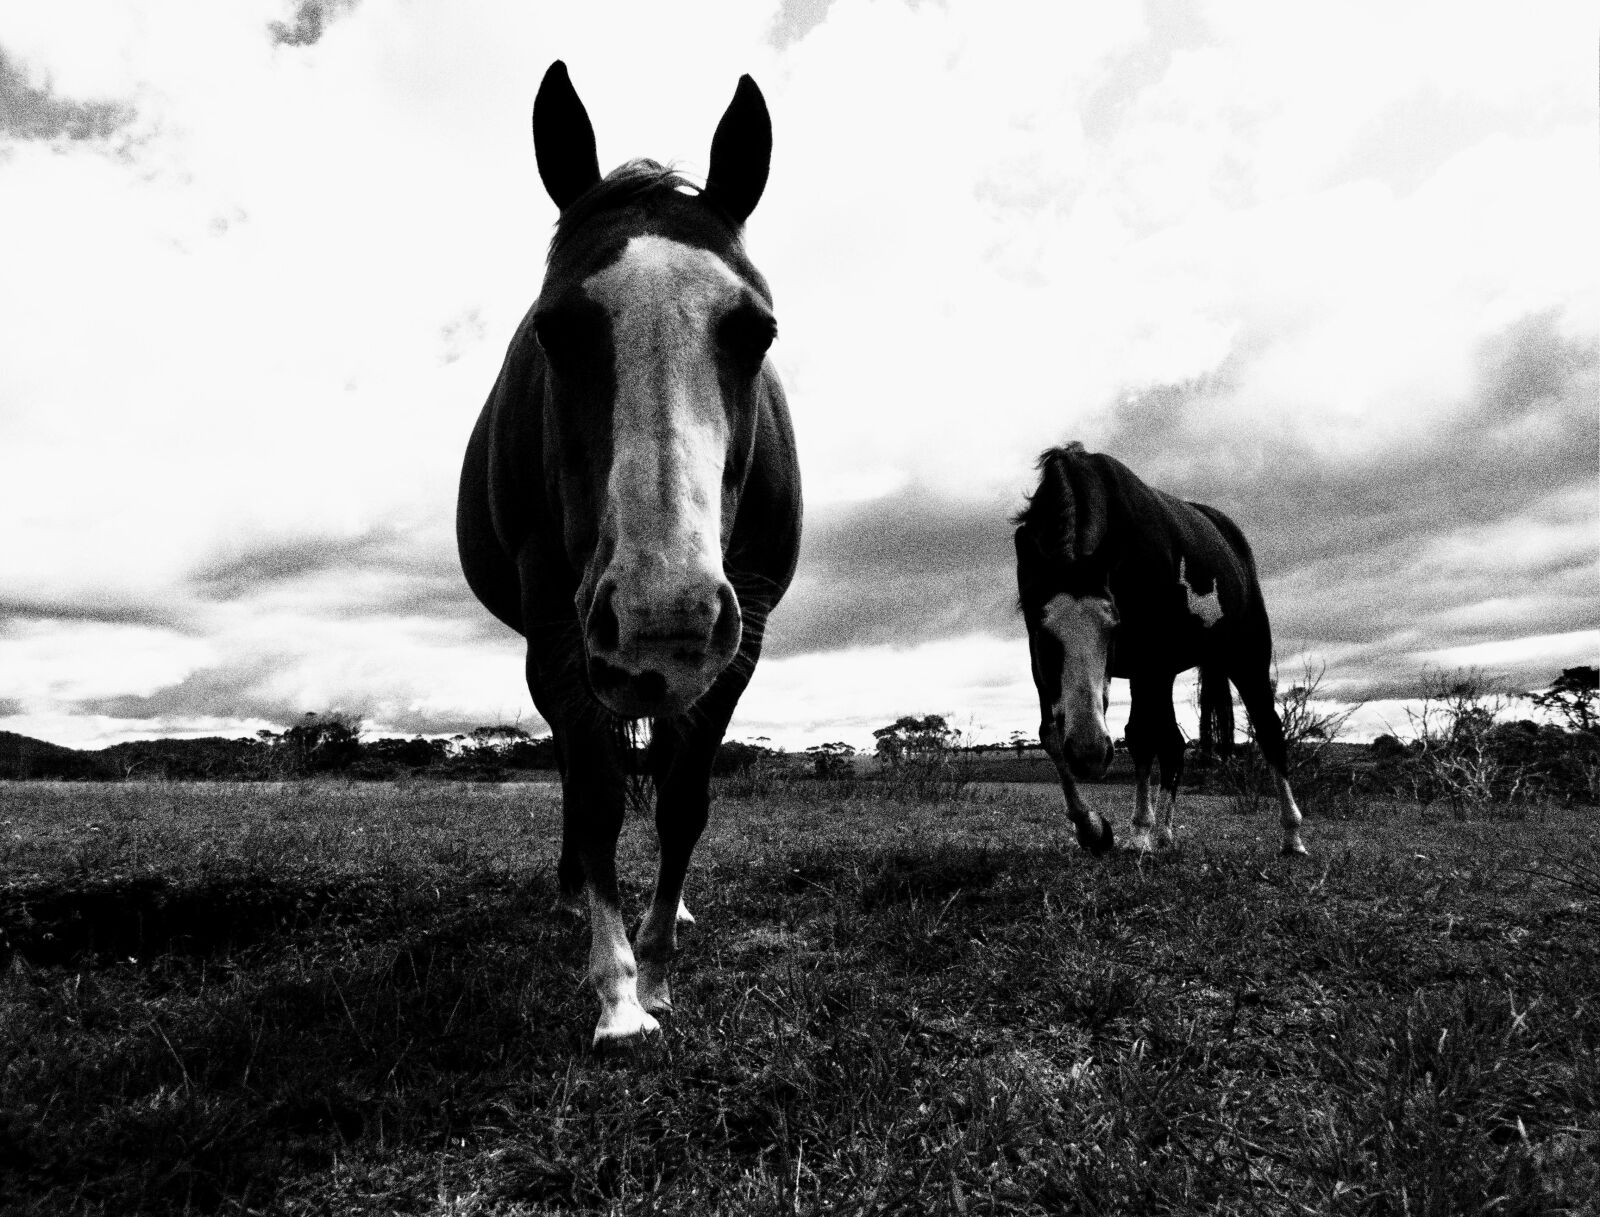 Olympus TG-4 sample photo. Horse, nature, animal photography